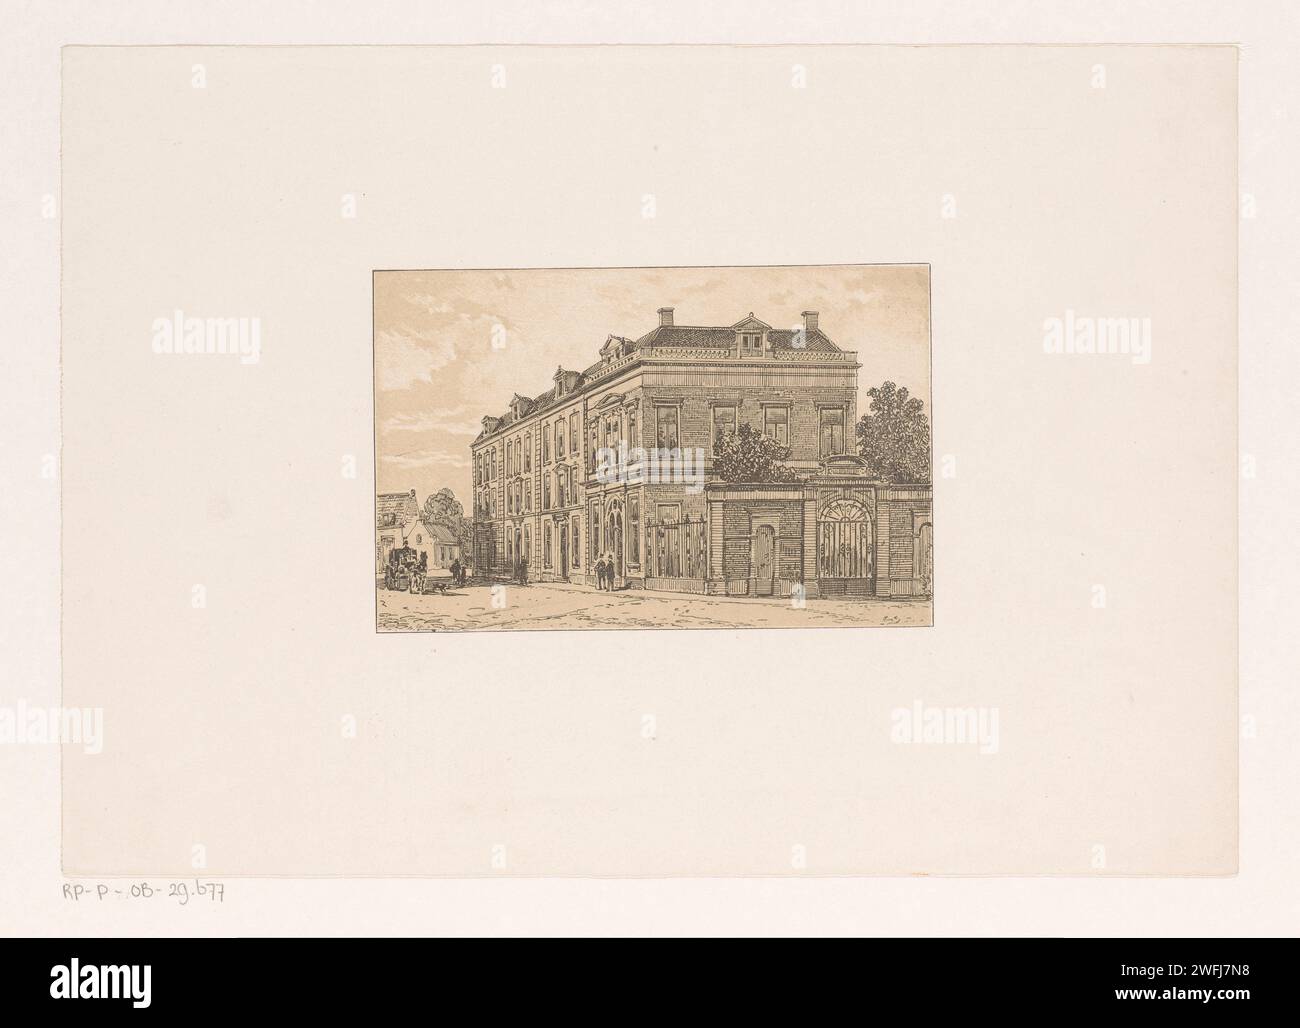 Häuserblock aus dem 18. Jahrhundert, Cornelis Springer (möglich), 1827 - 1891 Druckleute und ein Pferd mit Kutsche auf der Straße in einem Häuserblock aus dem 18. Jahrhundert. Niederlande Papiergehäuse Stockfoto